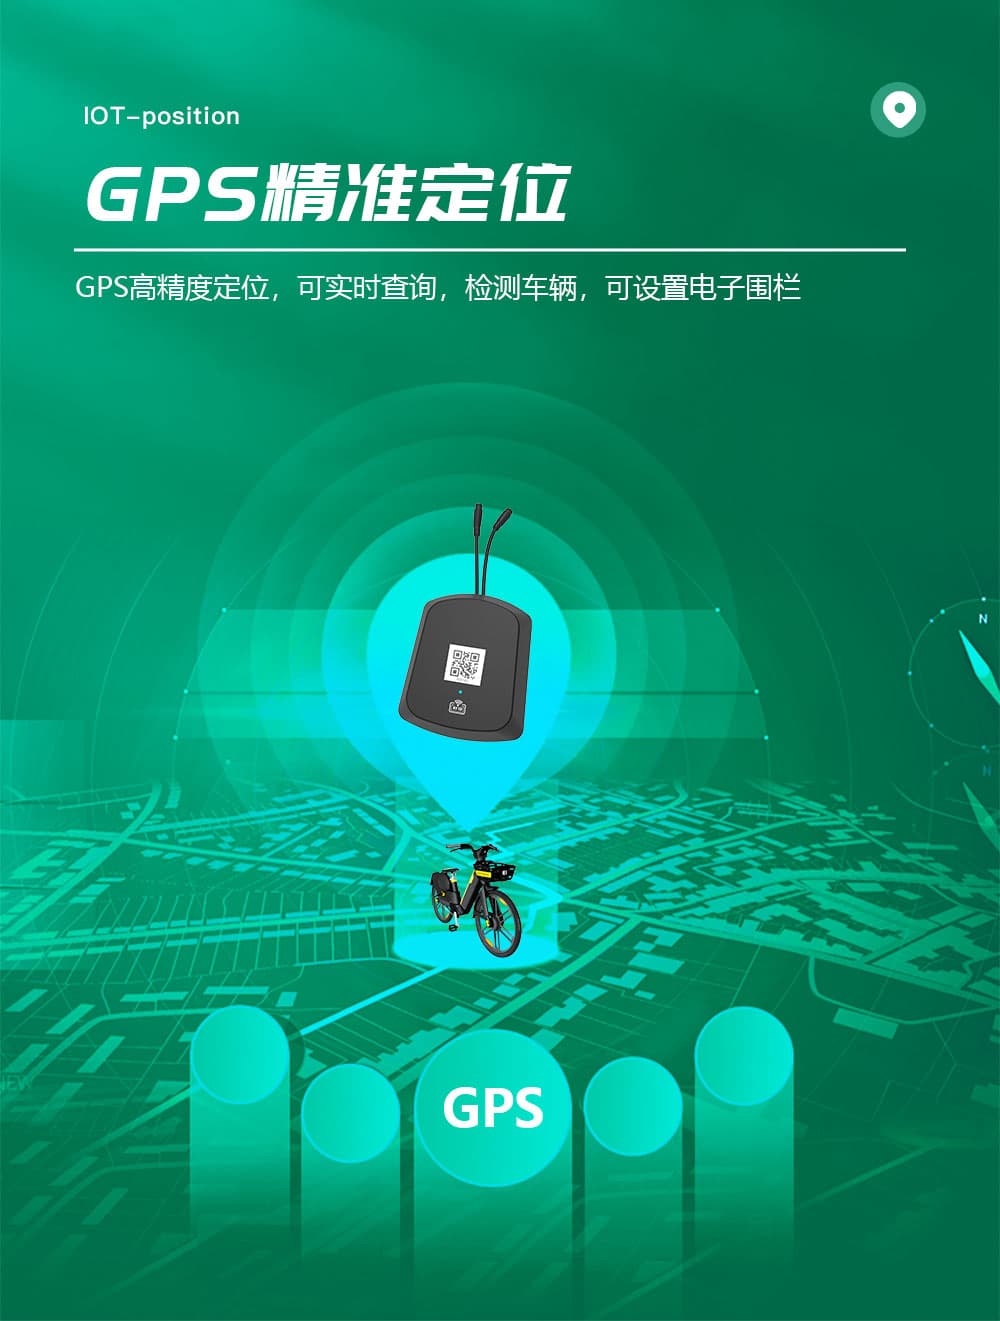 共享电动车物联网IOT+GPS+GPRS